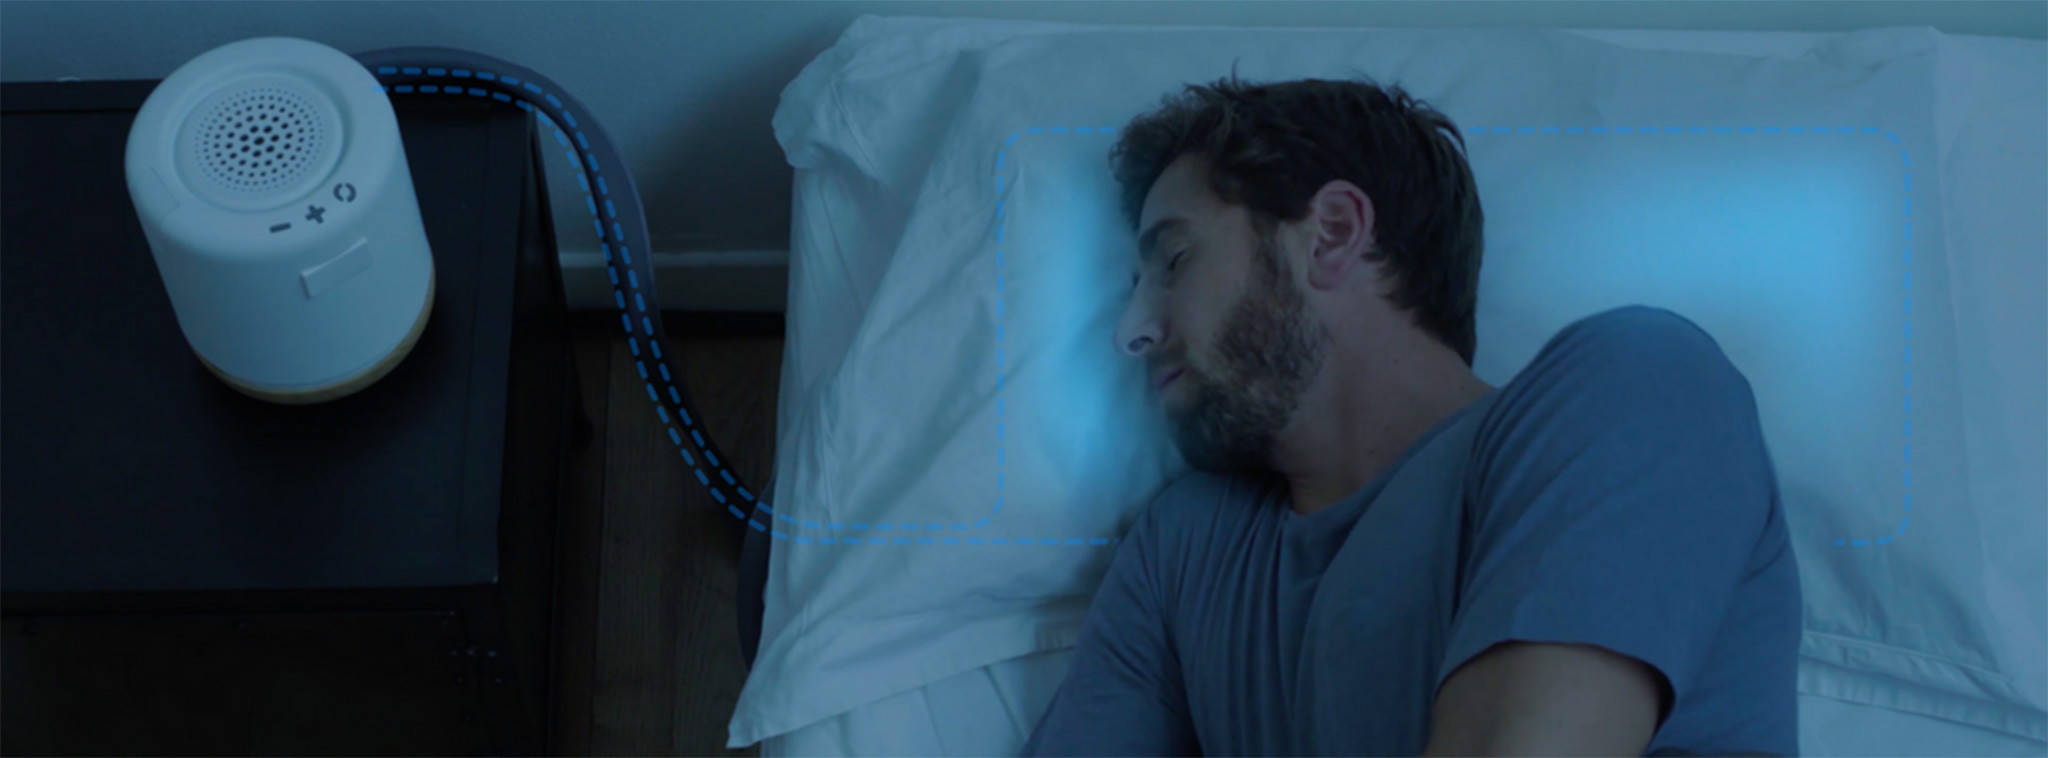 [Kickstarter] Moona - hệ thống gối thông minh thay đổi nhiệt giúp ngủ ngon hơn, thức giấc tự nhiên